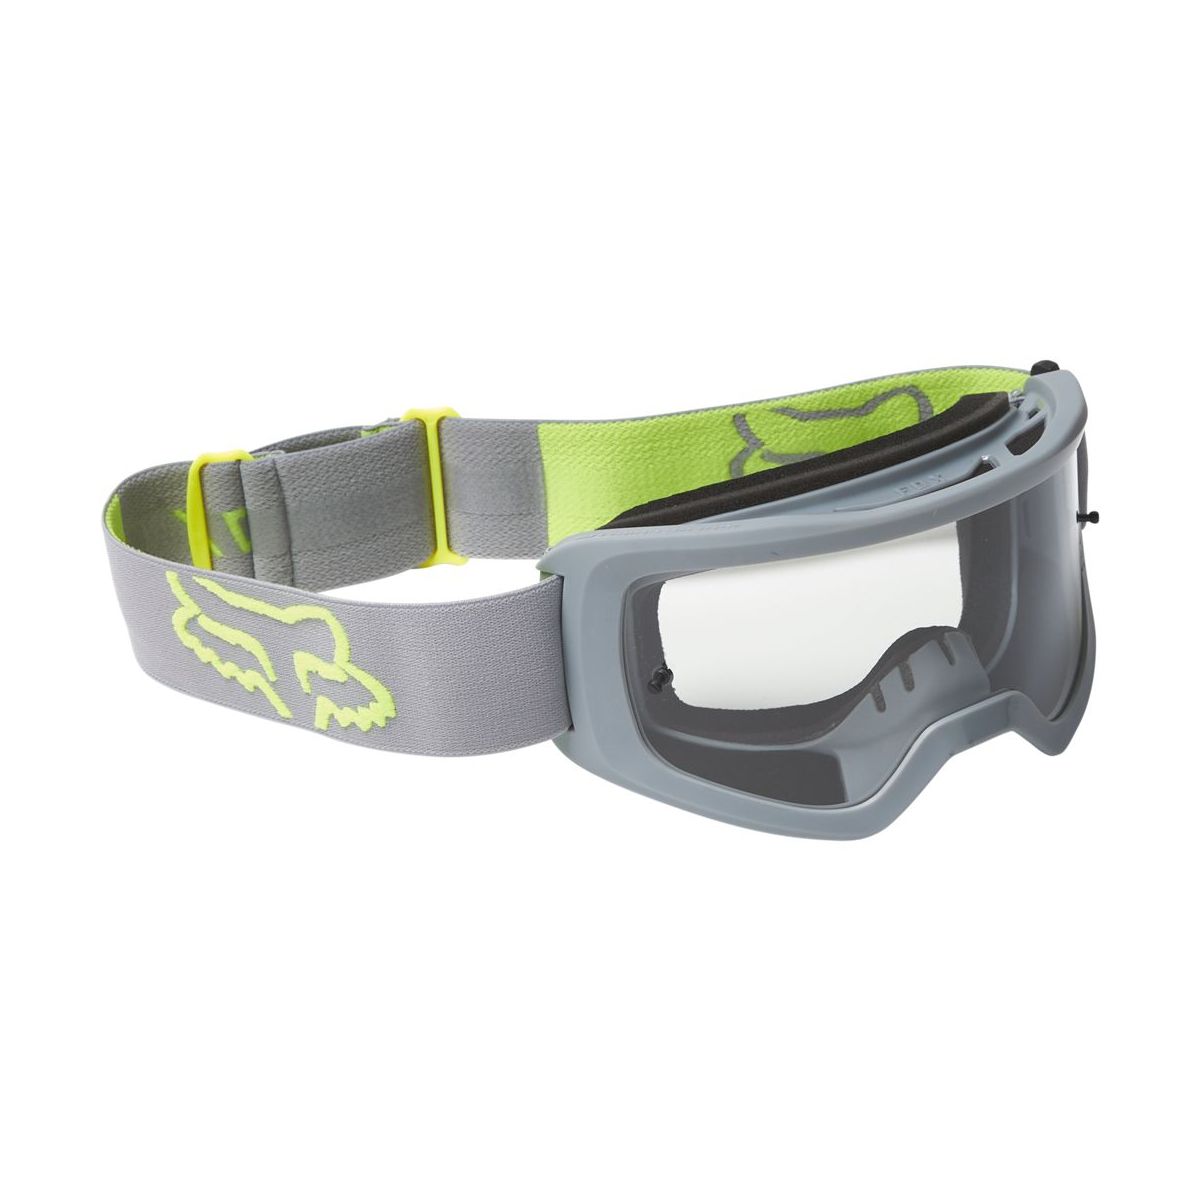 Gafas máscara Fox Main X Stray lente transparente color gris / amarillo para descenso y enduro | the bike village 26471